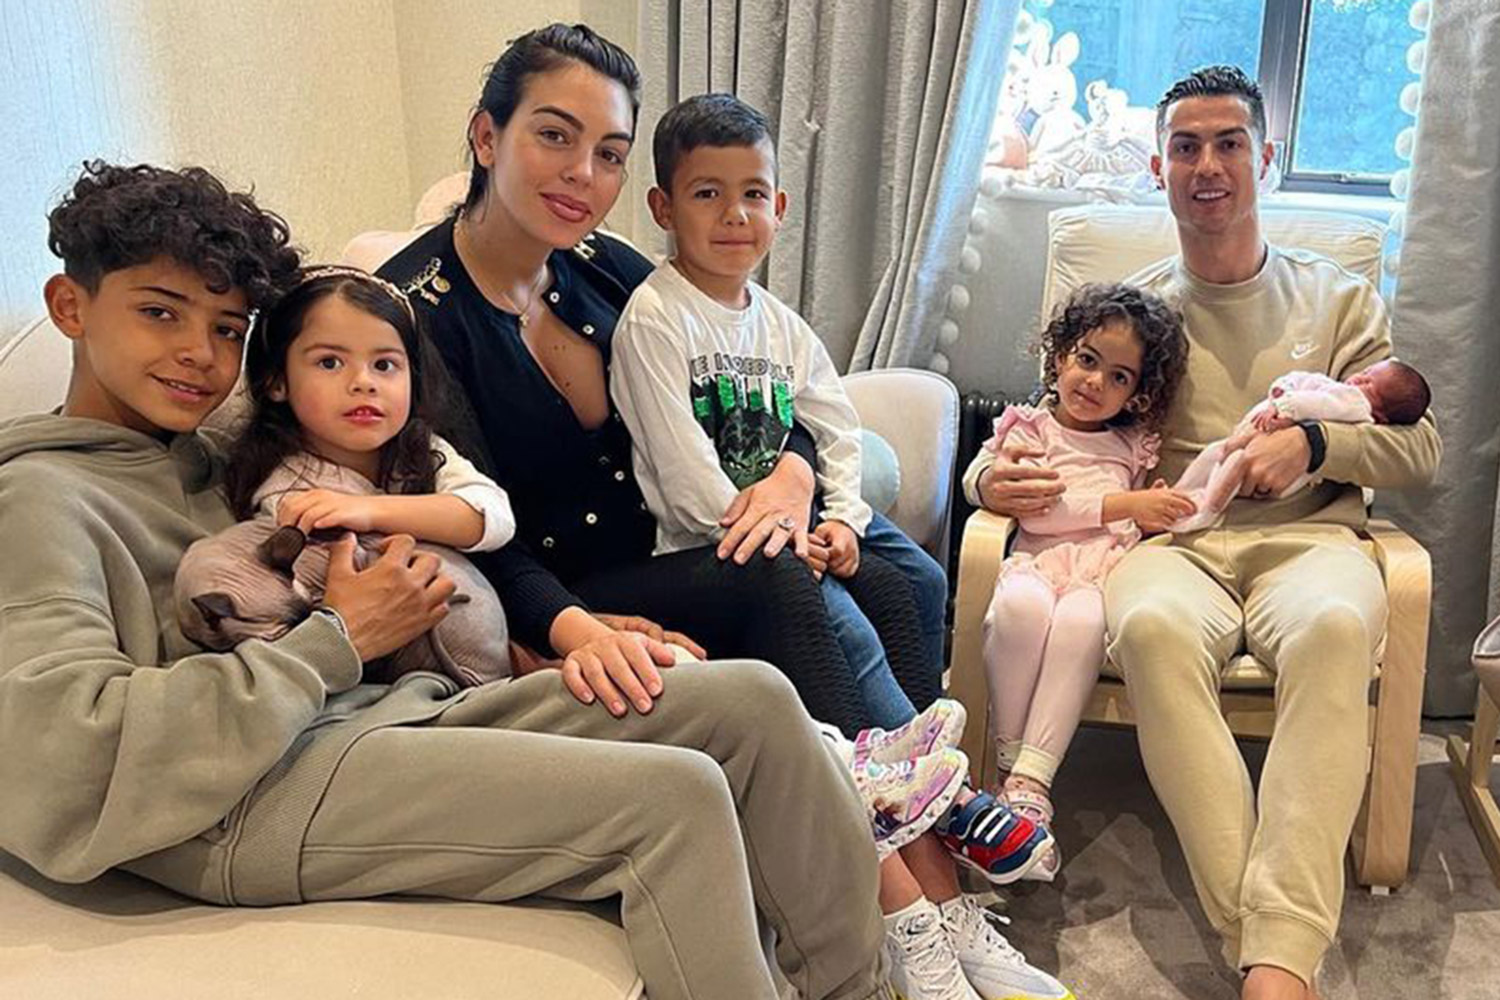 Ronaldo and family